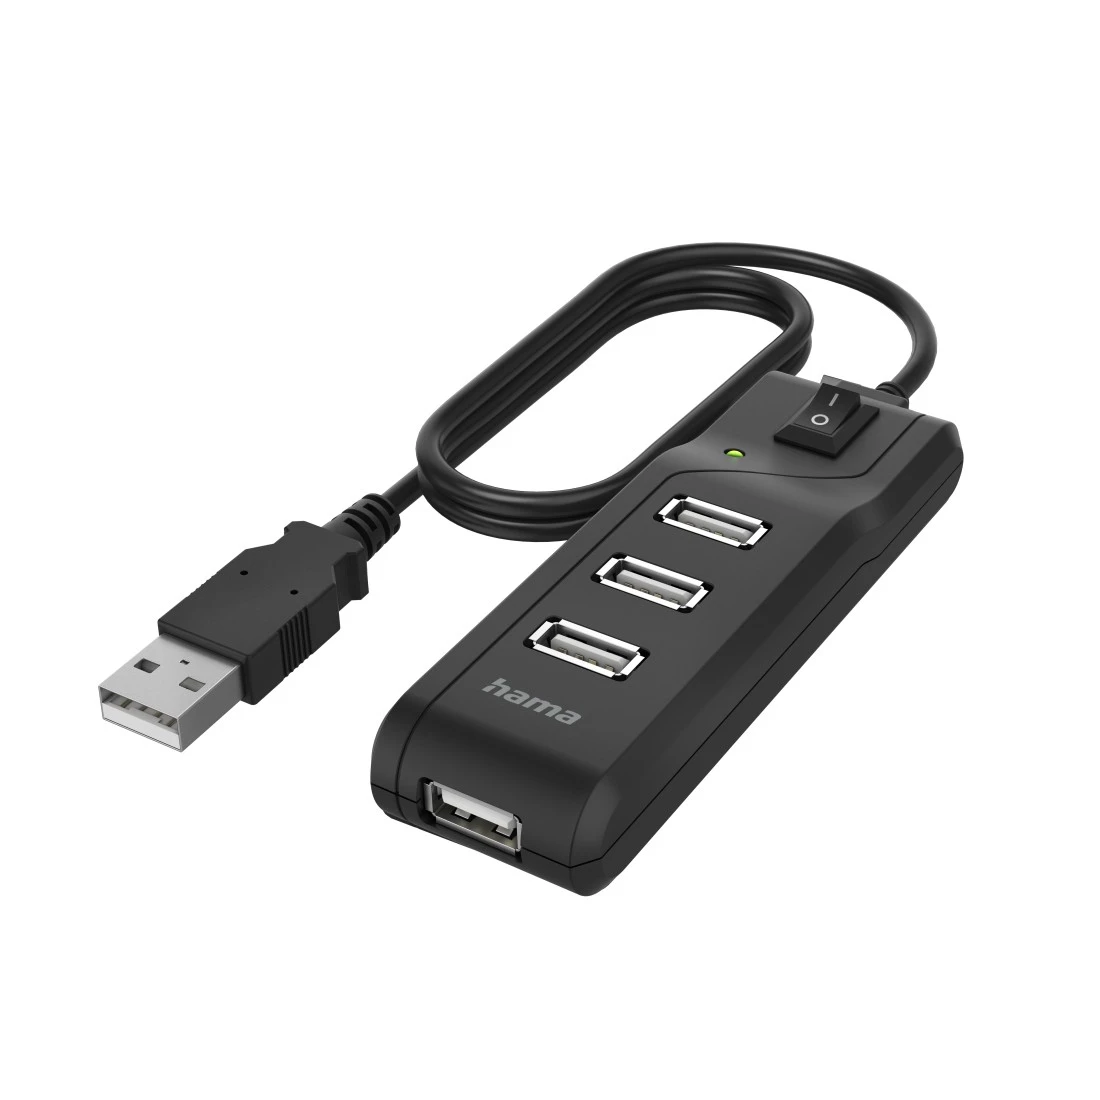 Hub USB, 4 ports, USB 2.0, 480 Mbit/s, interrupteur marche/arrêt